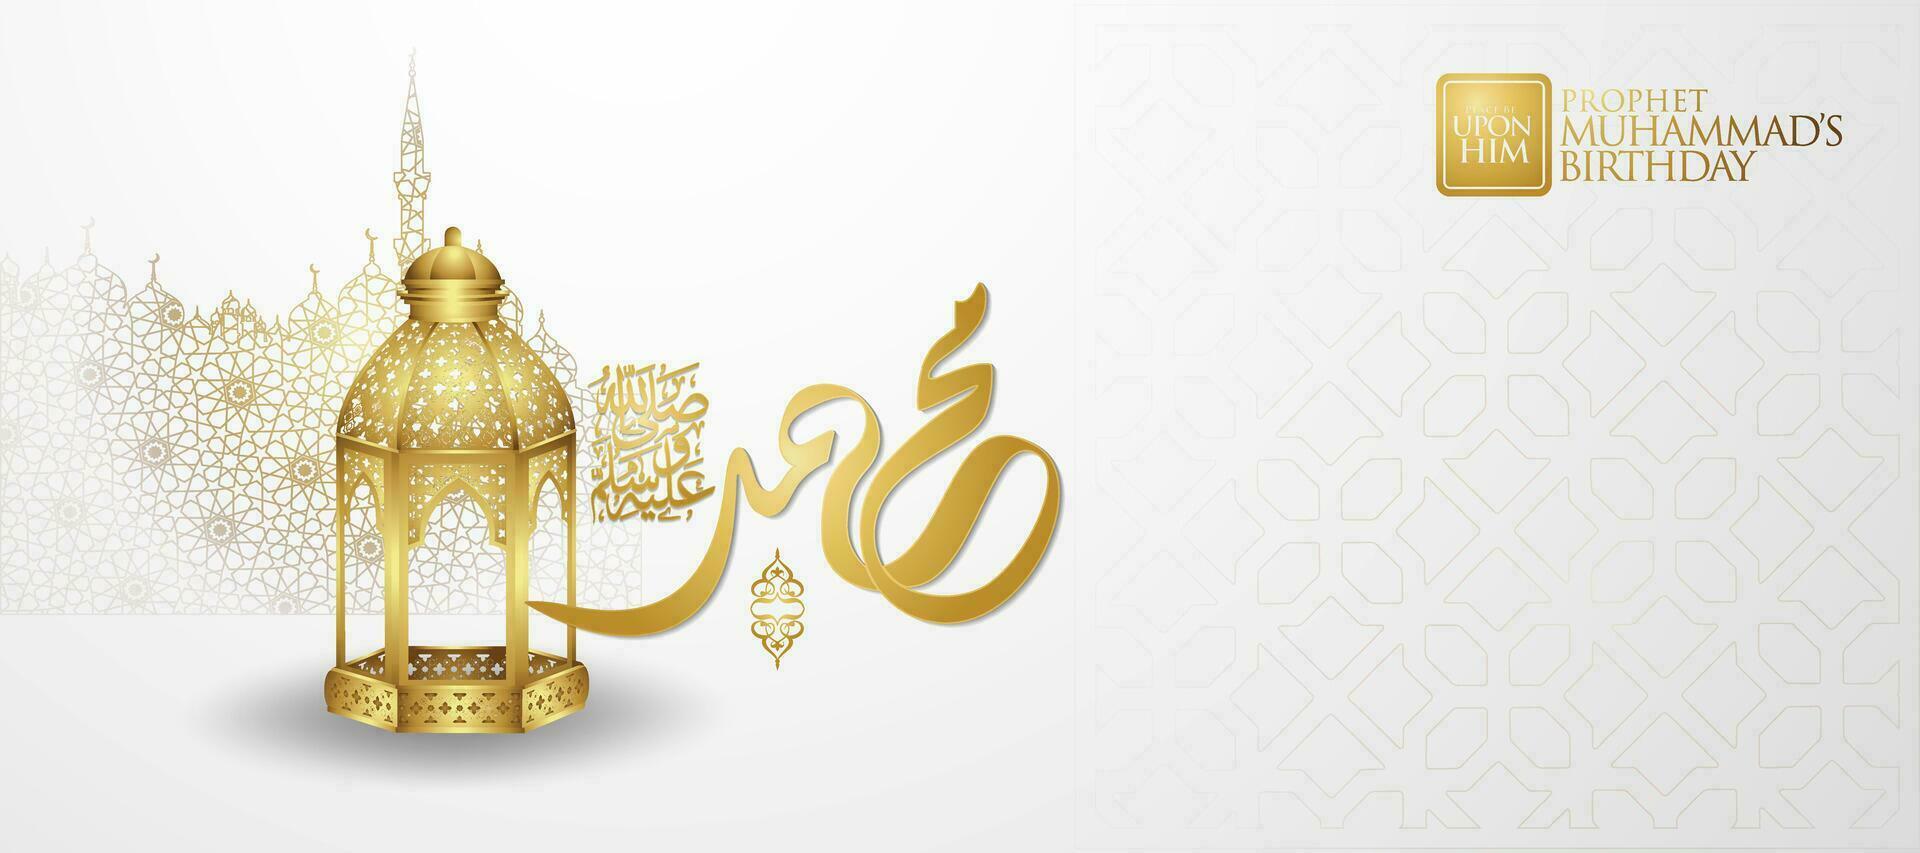 Arabisch schoonschrift voor mawlid viering achtergrond illustratie vector